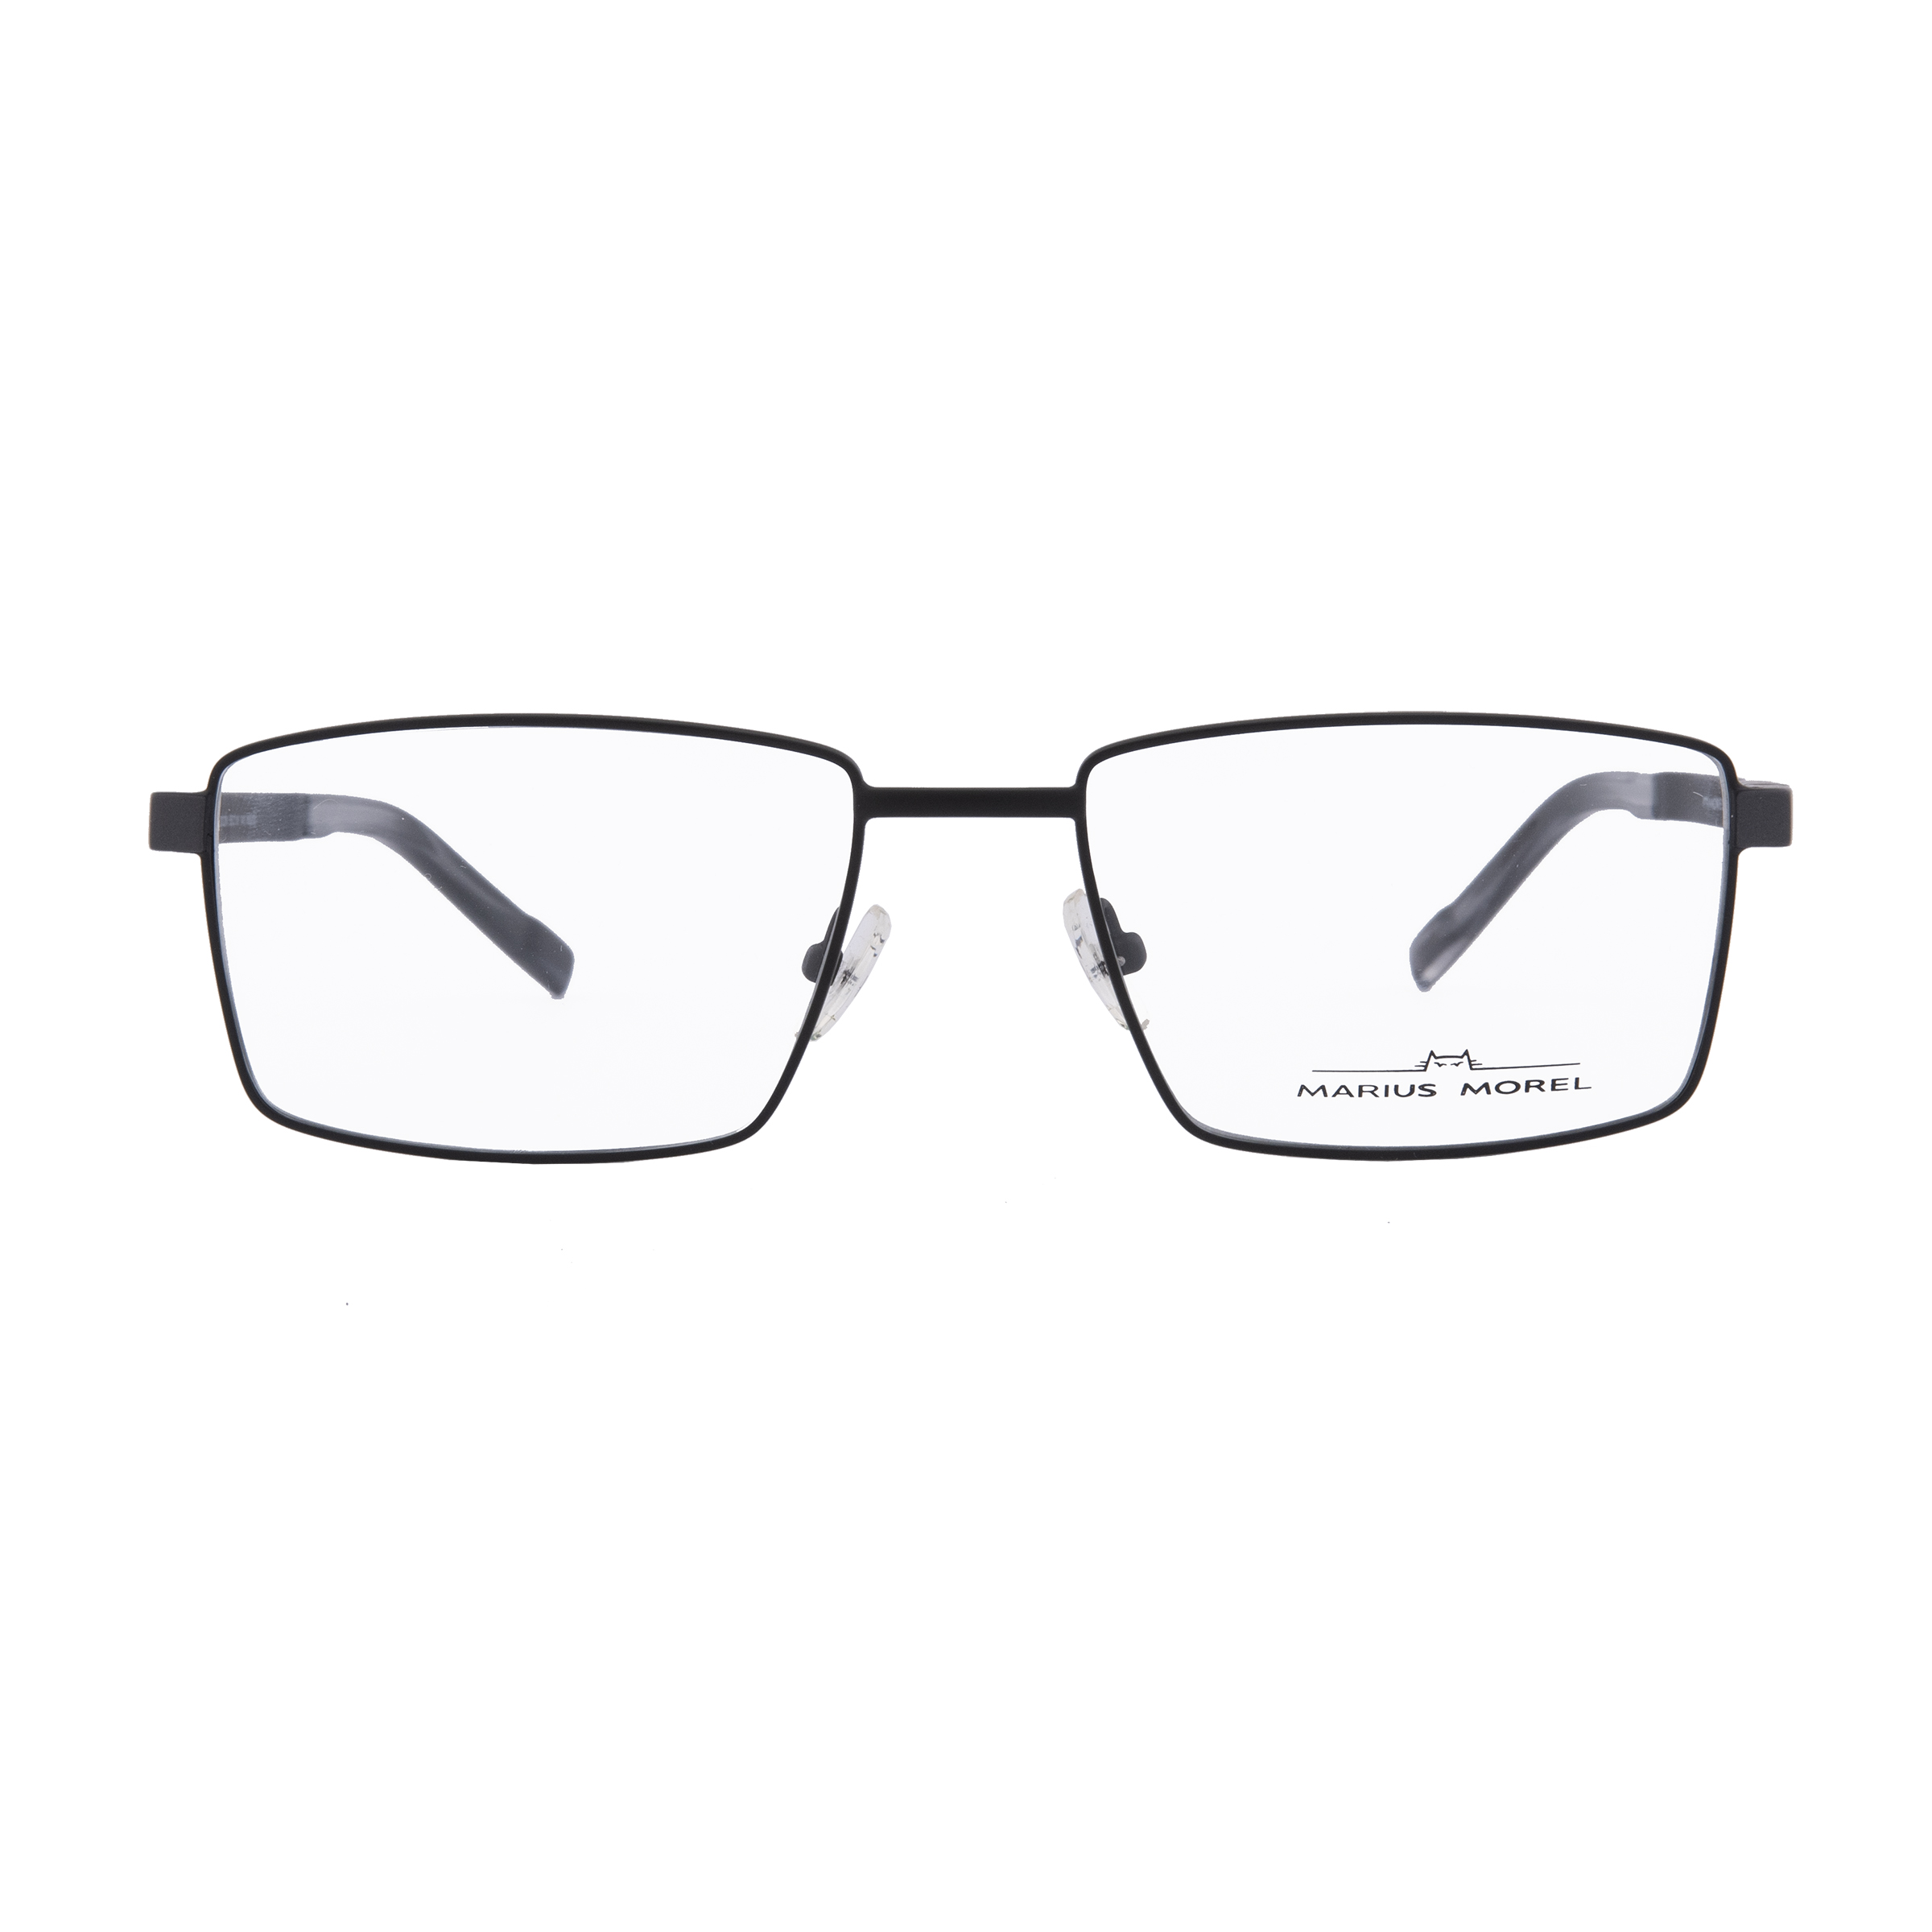 فریم عینک طبی مردانه ماریوس مورل مدل 50002m